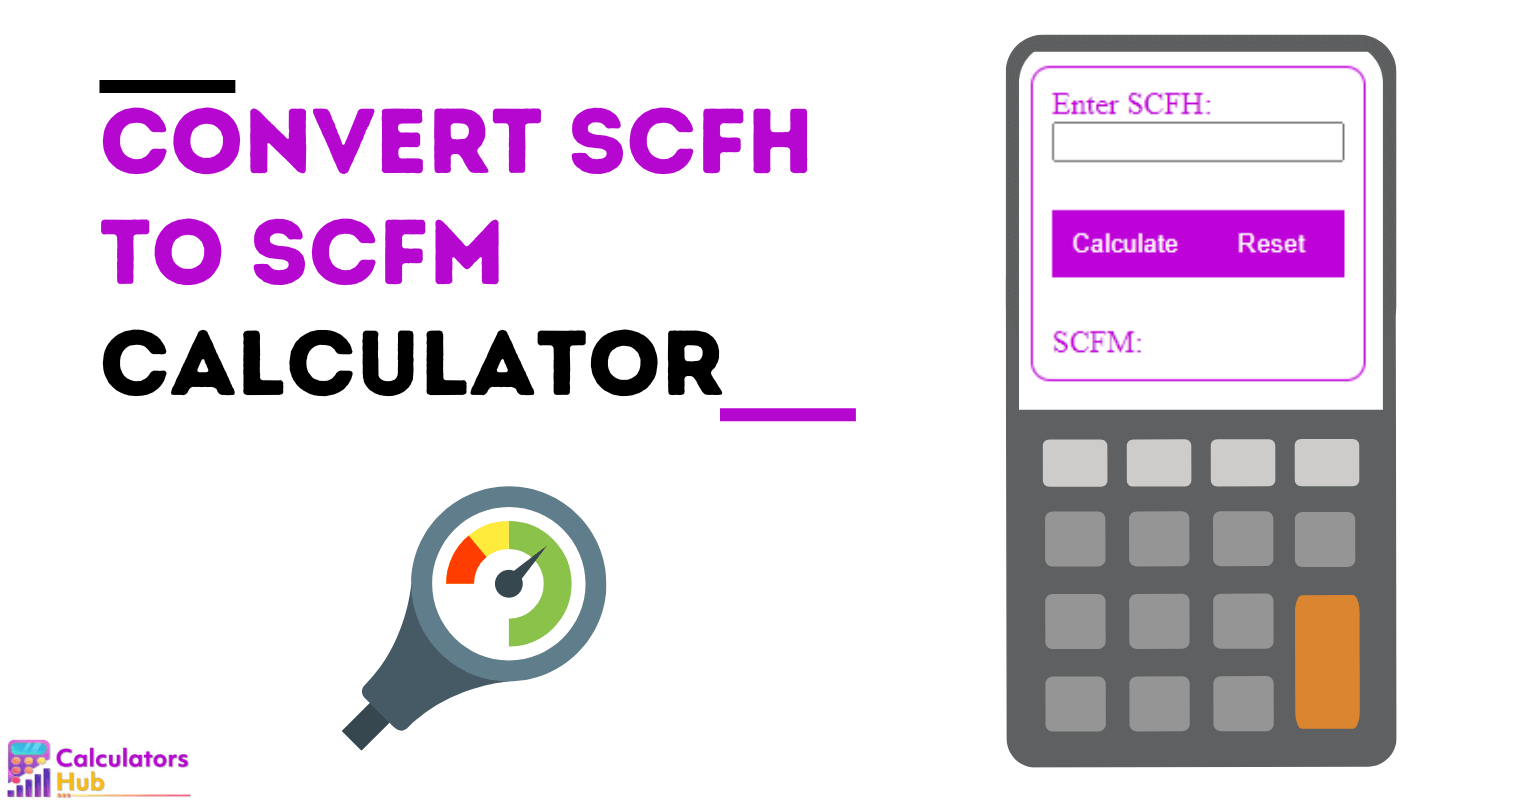 Calculadora Converter SCFH em SCFM